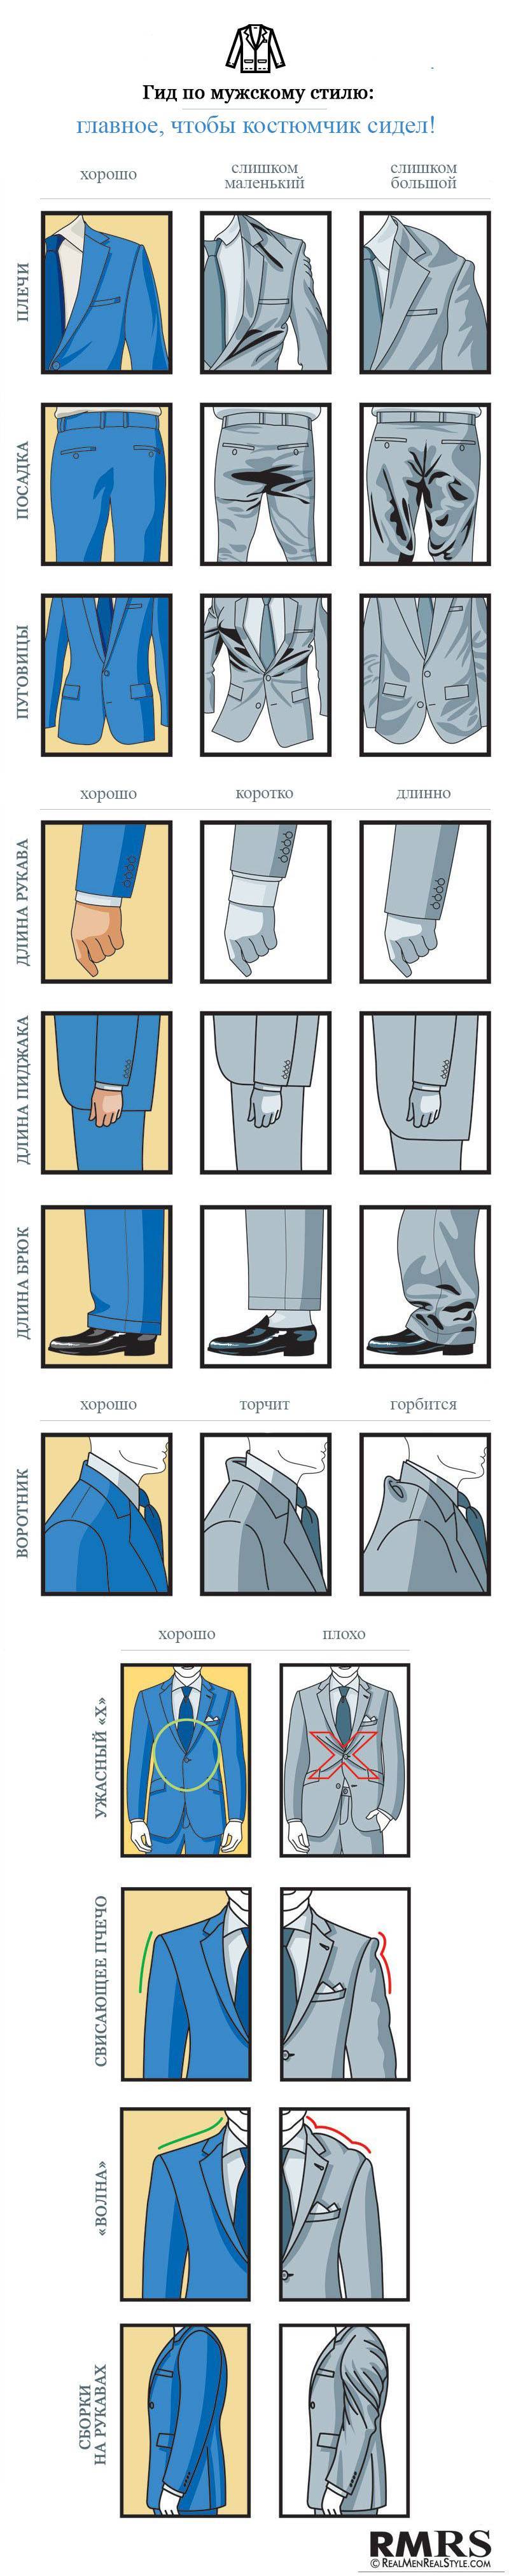 Как правильно выбрать мужской и женский пиджак: полезные советы по выбору пиджака art-textil.ru